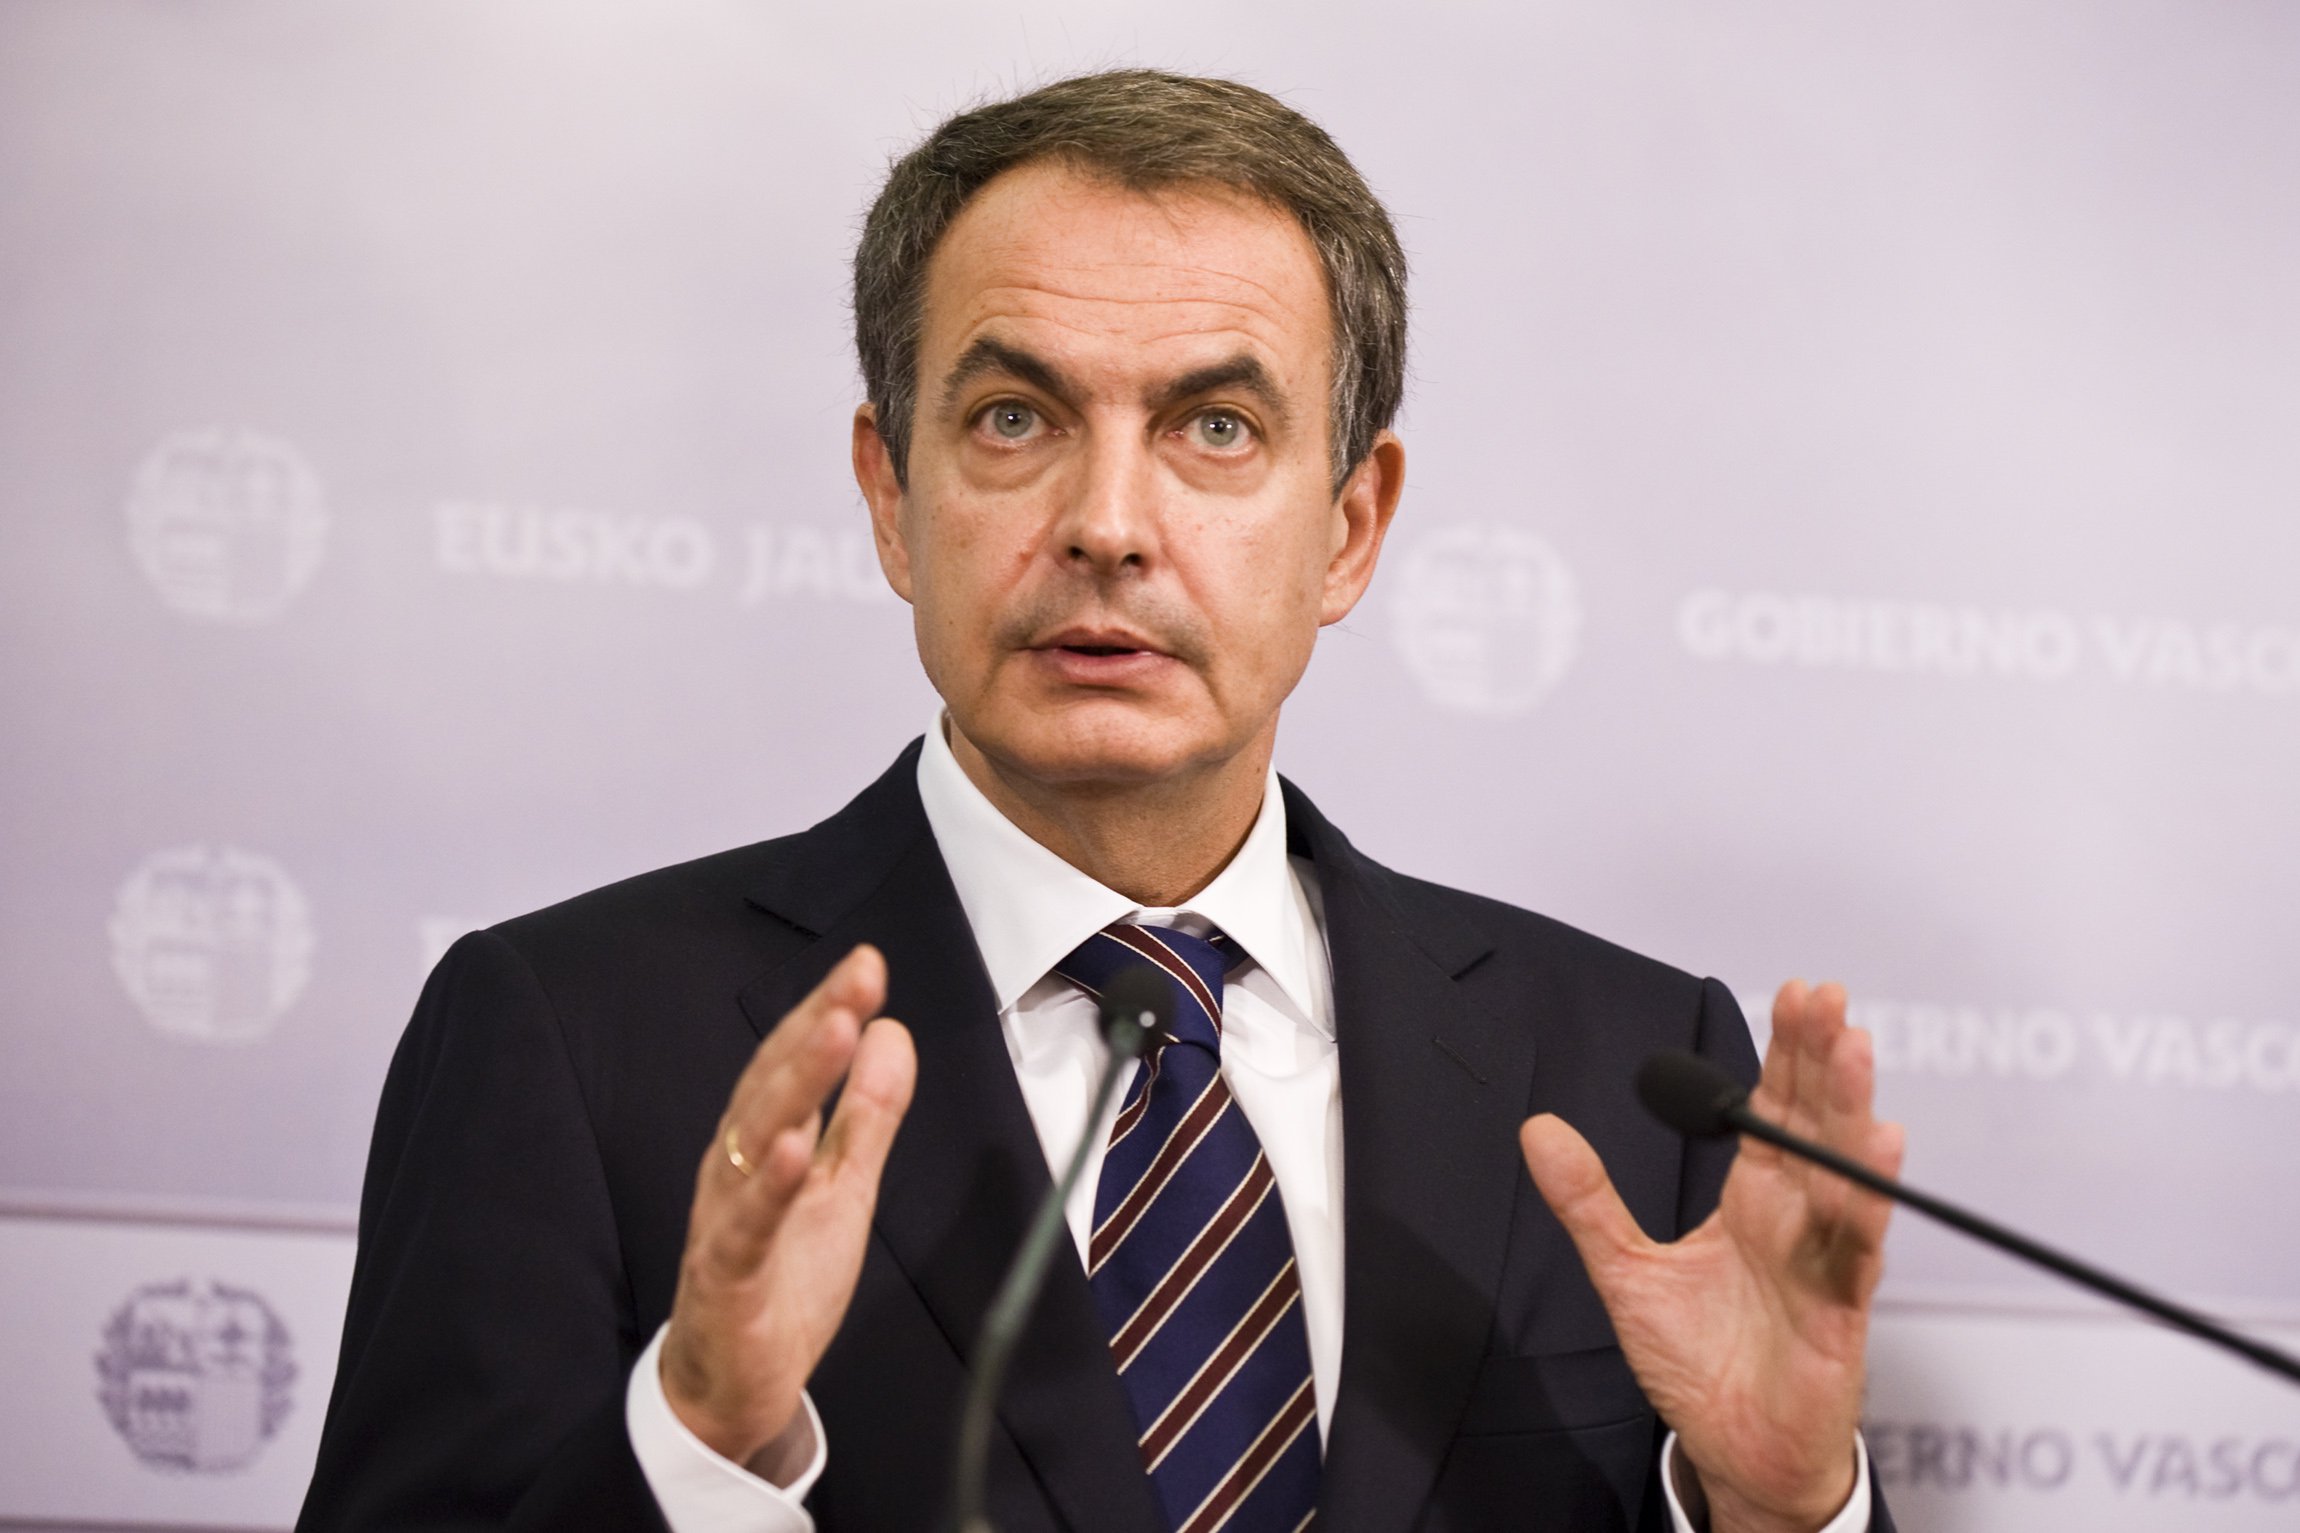 El ex jefe del Gobierno español, José Luis Rodríguez Zapatero, propuso construir un "gran acuerdo nacional" en Venezuela después de las elecciones del 20 de mayo